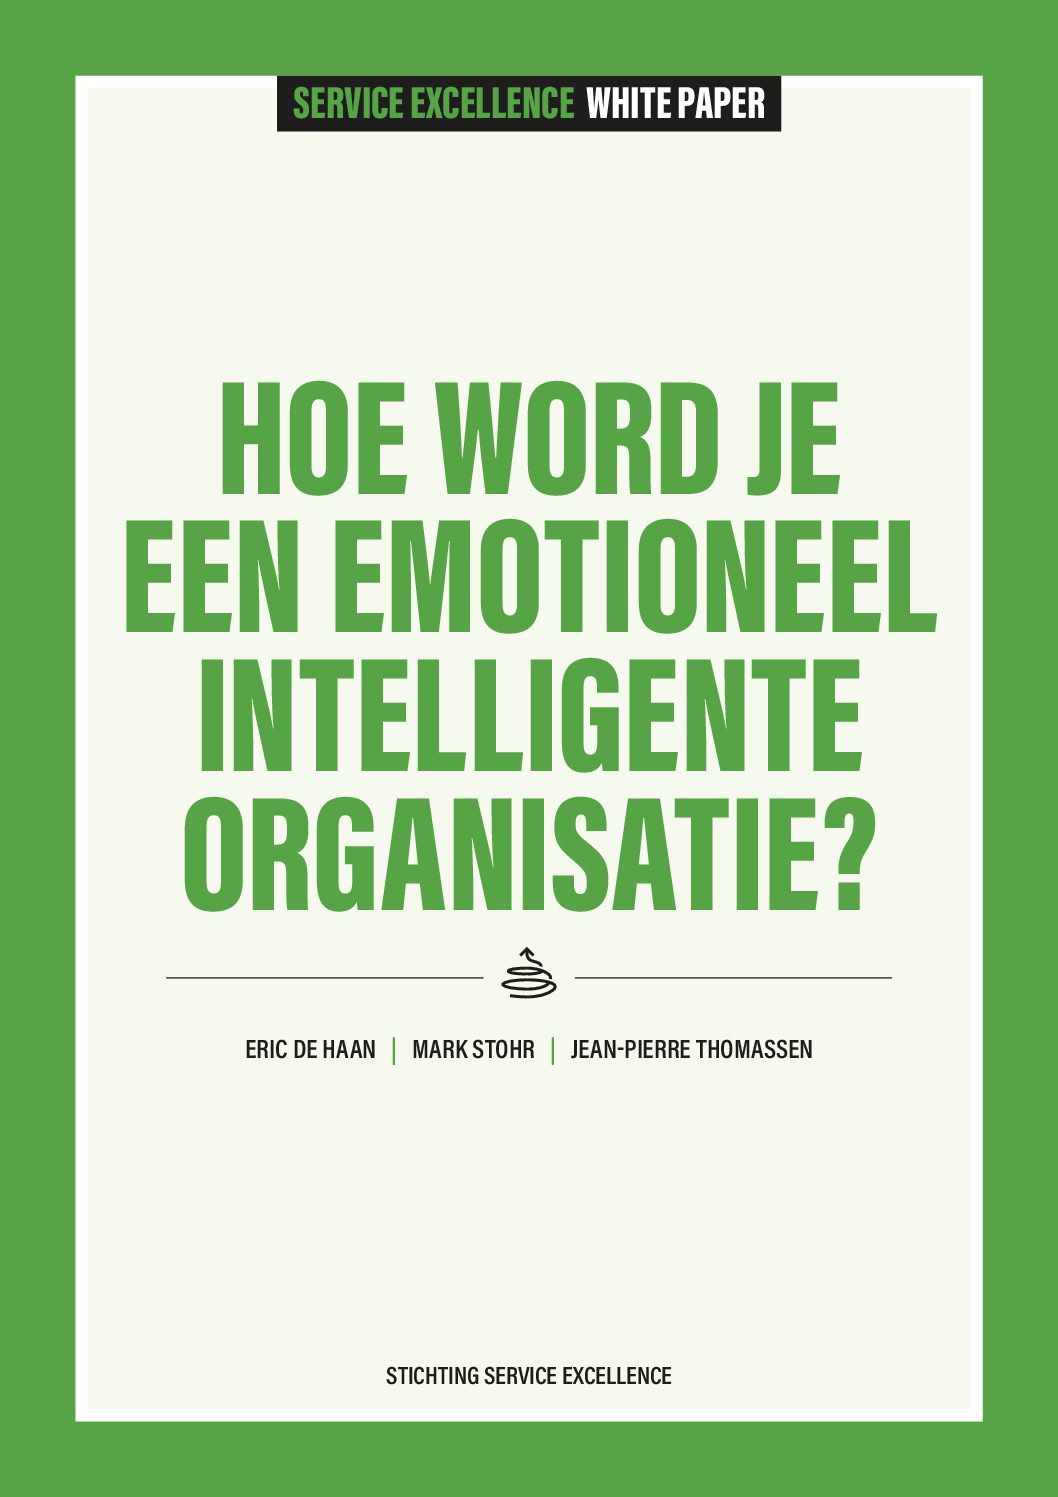 Emotioneel Intelligente Organisatie – Service Excellence White Paper